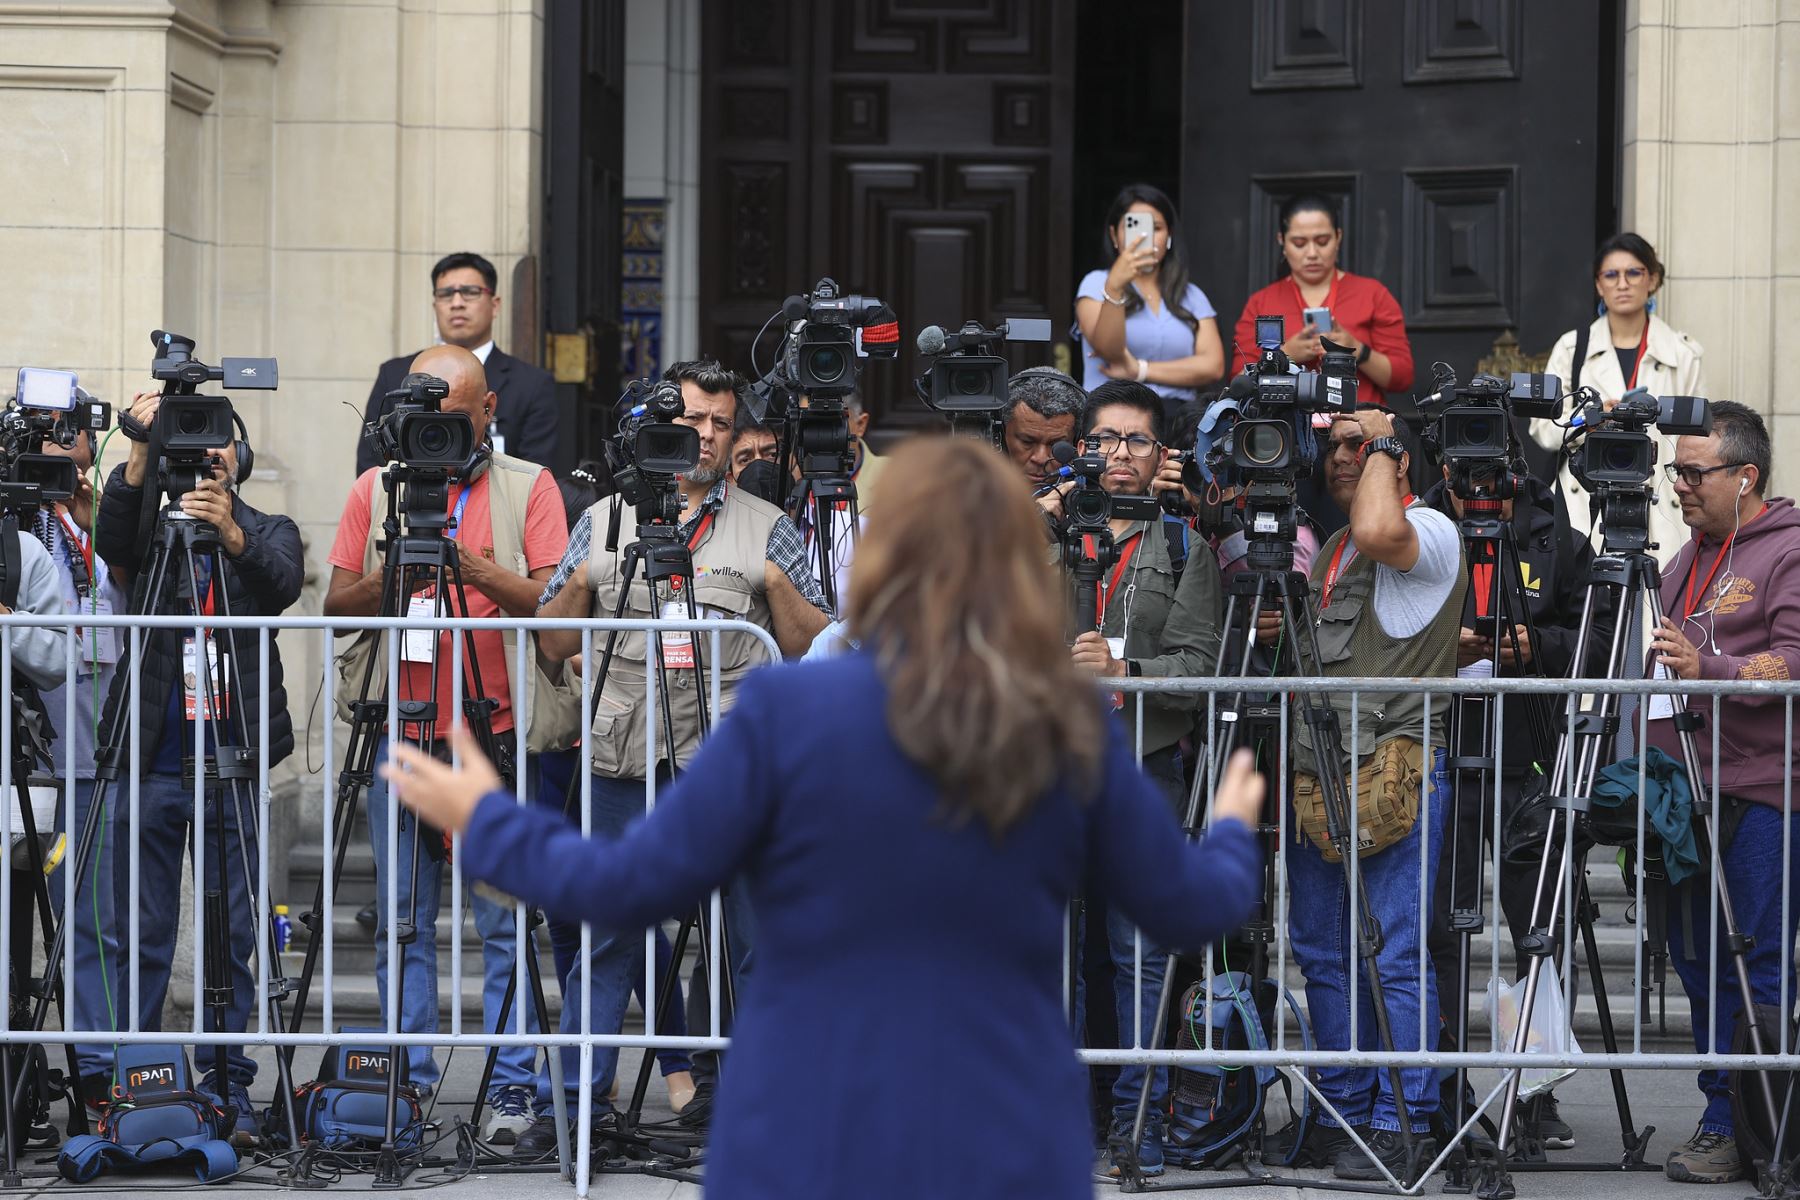 La presidenta Dina Boluarte brinda declaraciones a los medios de comunicación en el patio de honor de Palacio de Gobierno.

Foto: ANDINA/Presidencia Perú